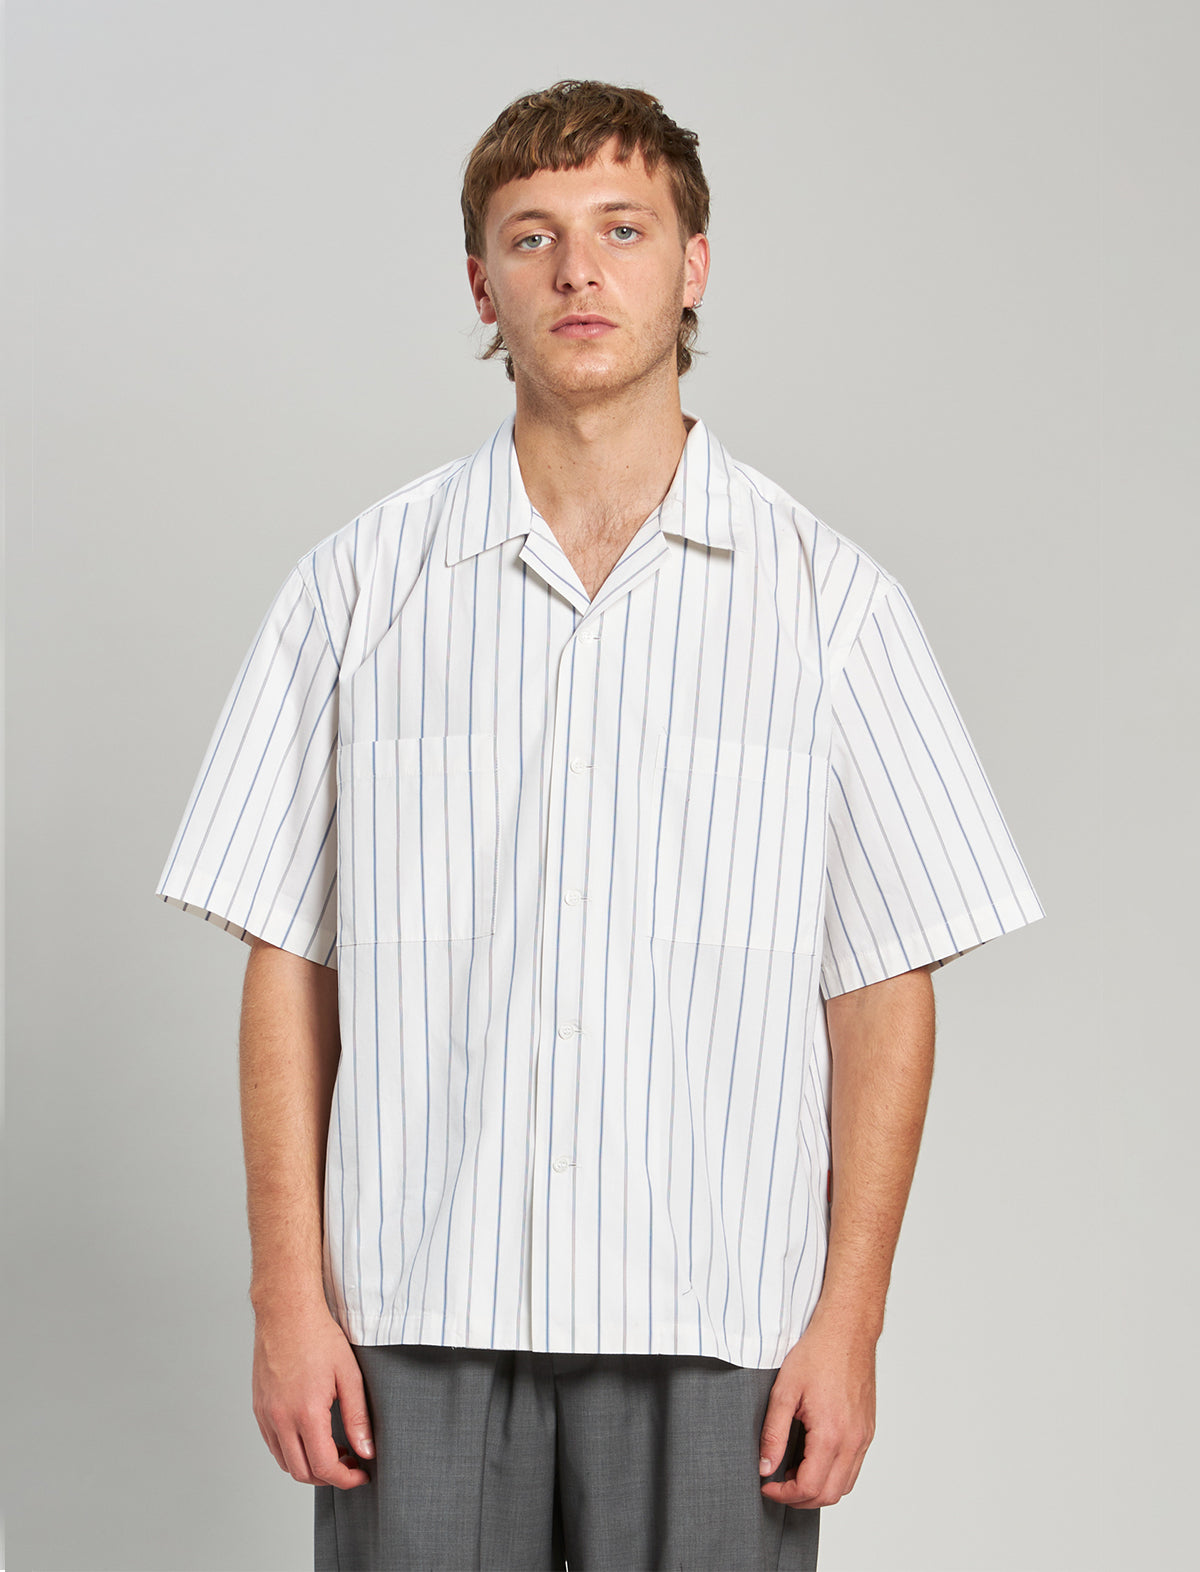 BARENA VENEZIA Cotton-Poplin Short-Sleeve Shirt in White Pinstripes